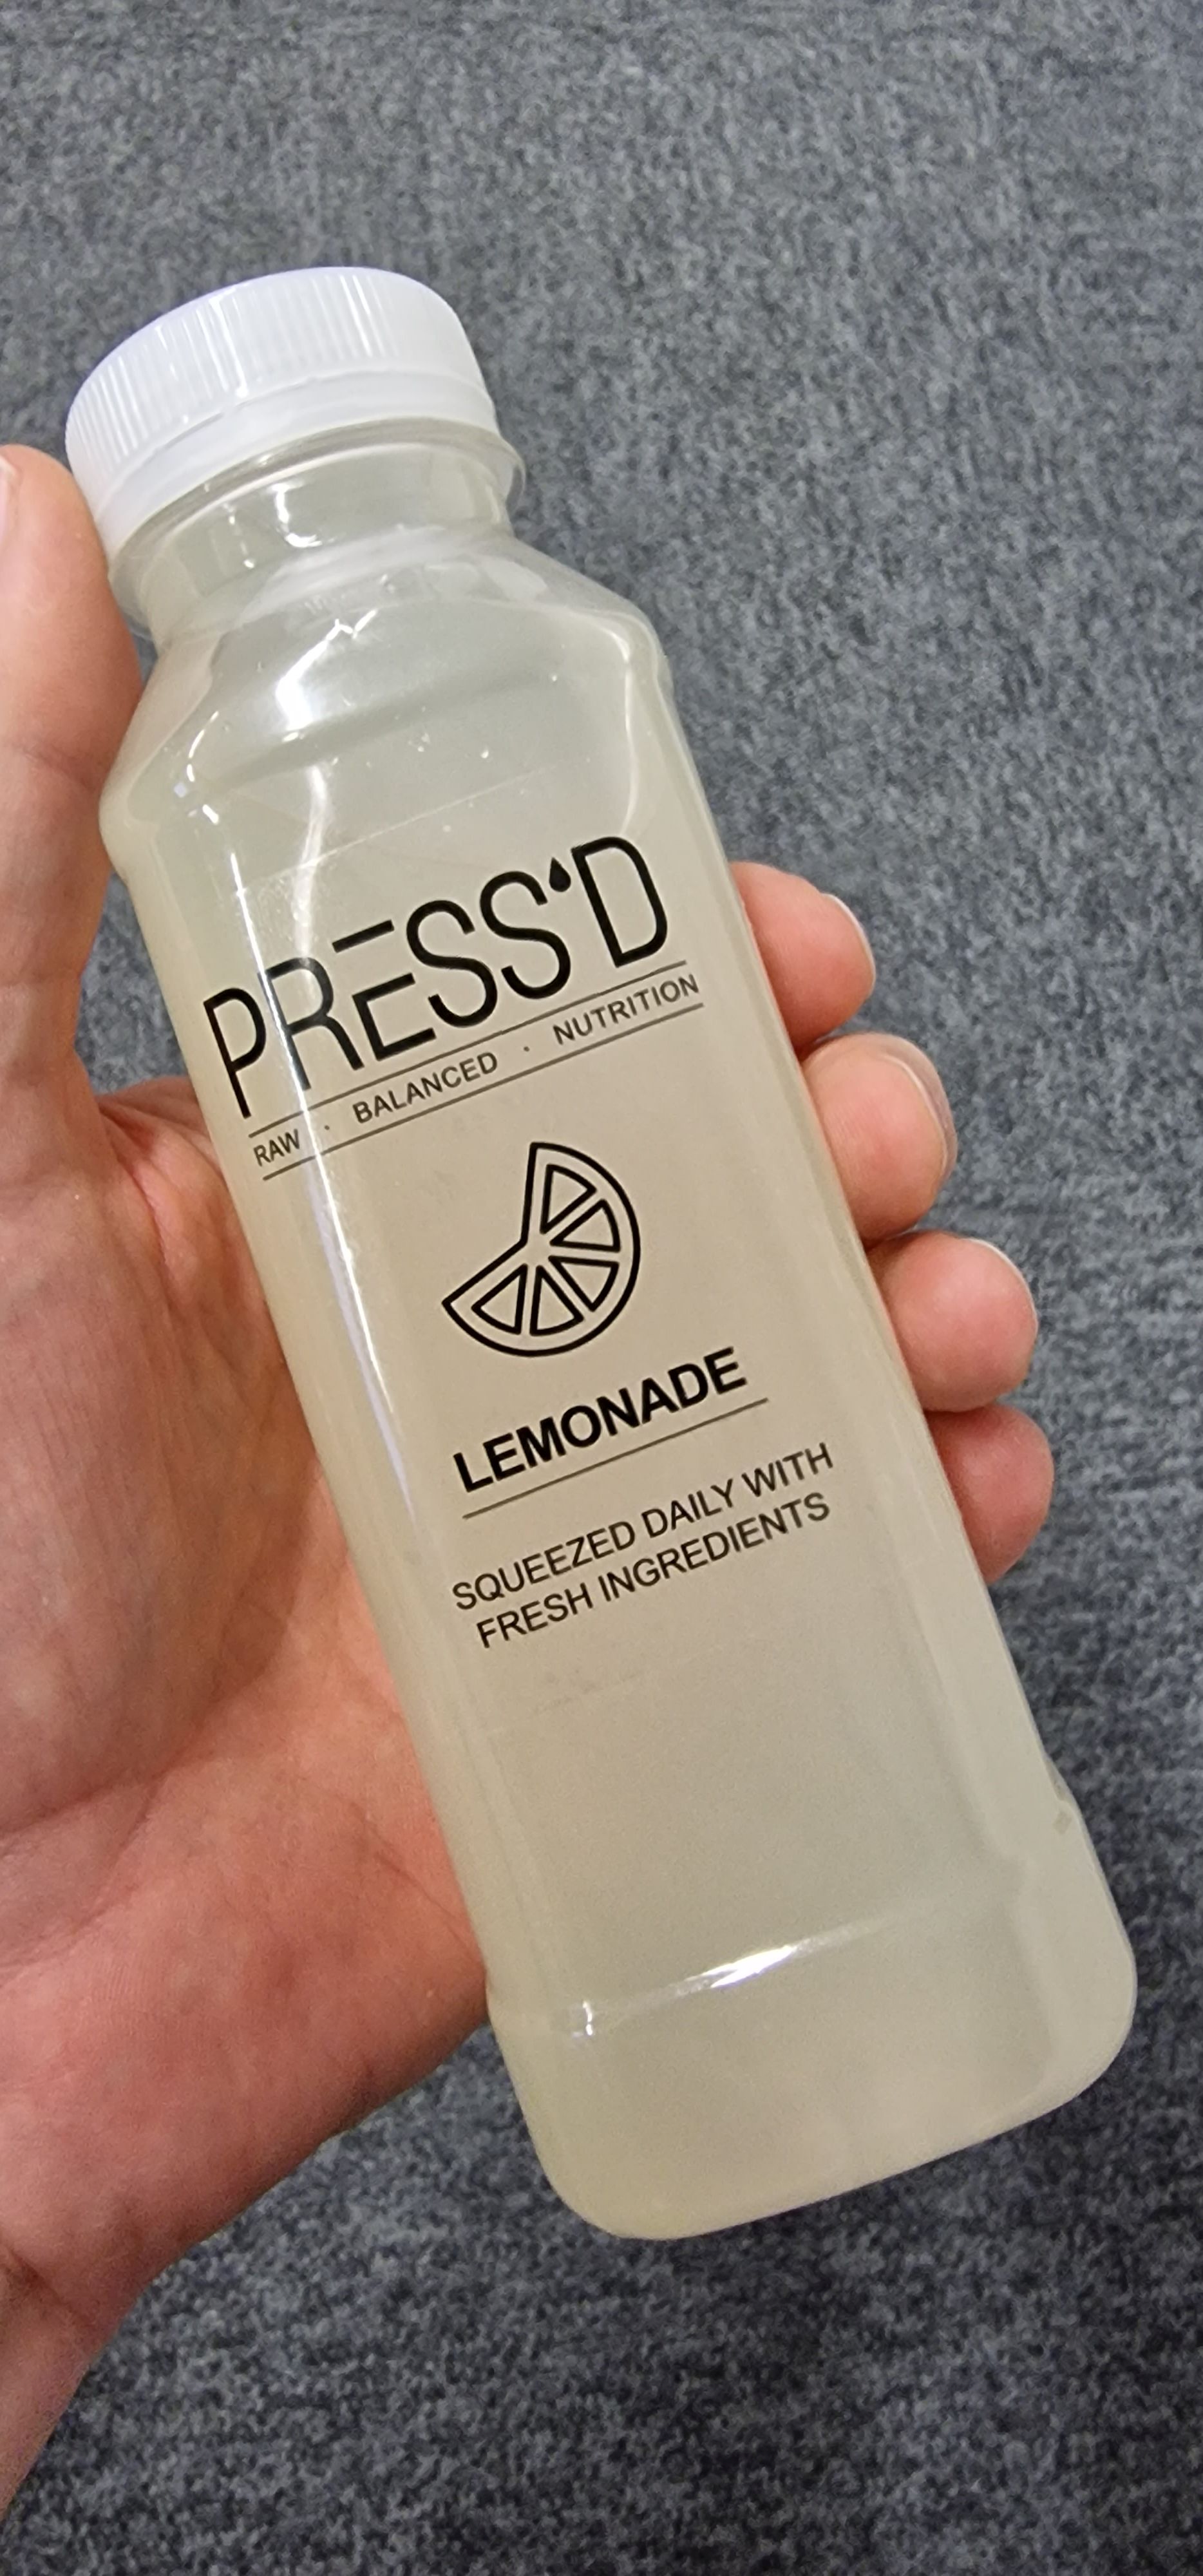 PRESS’D Lemonade